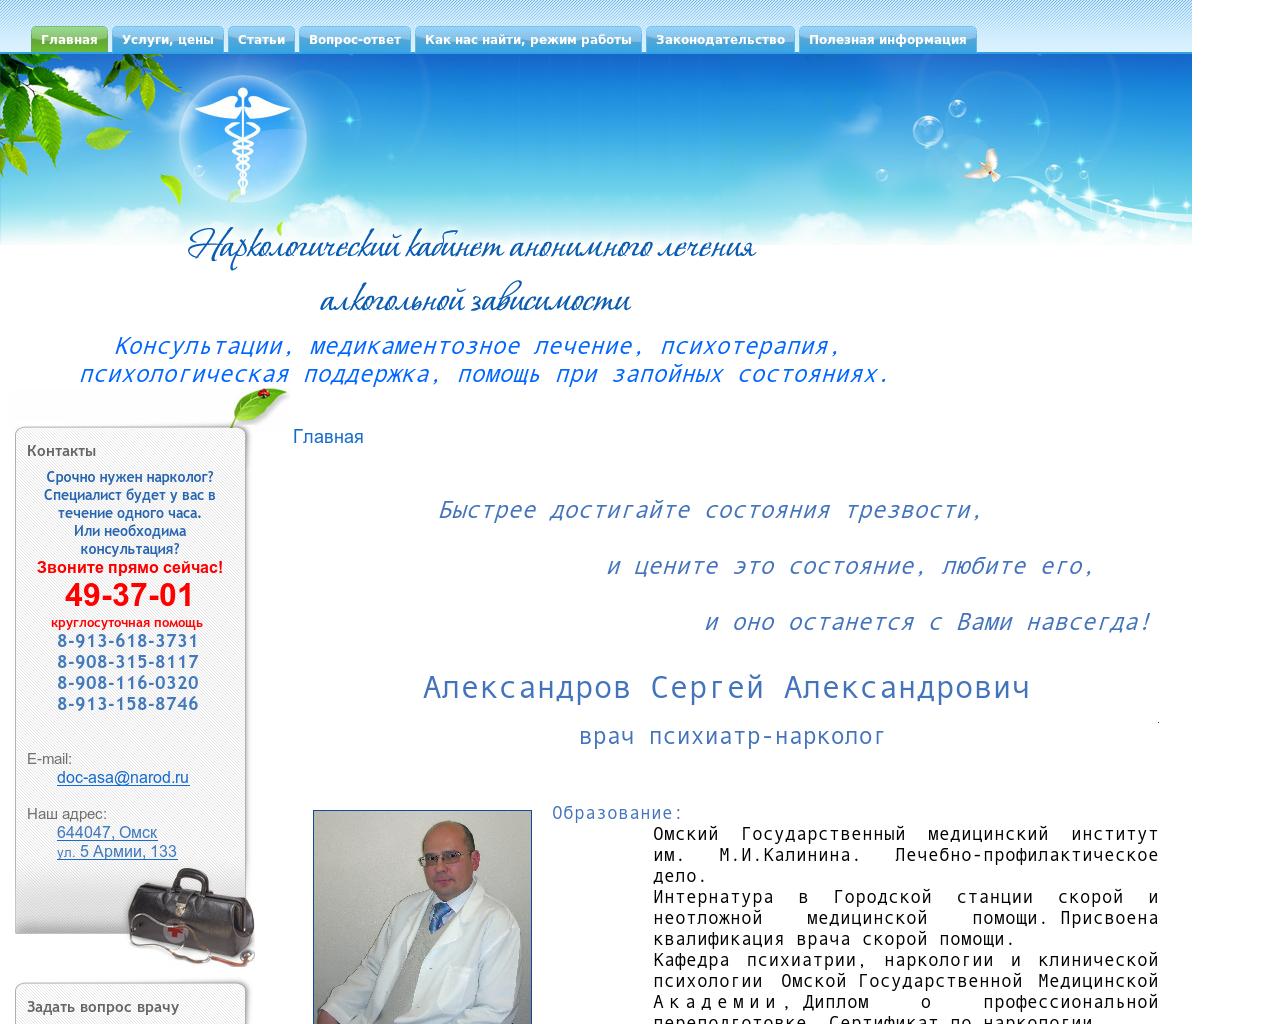 Изображение сайта net-alko.ru в разрешении 1280x1024